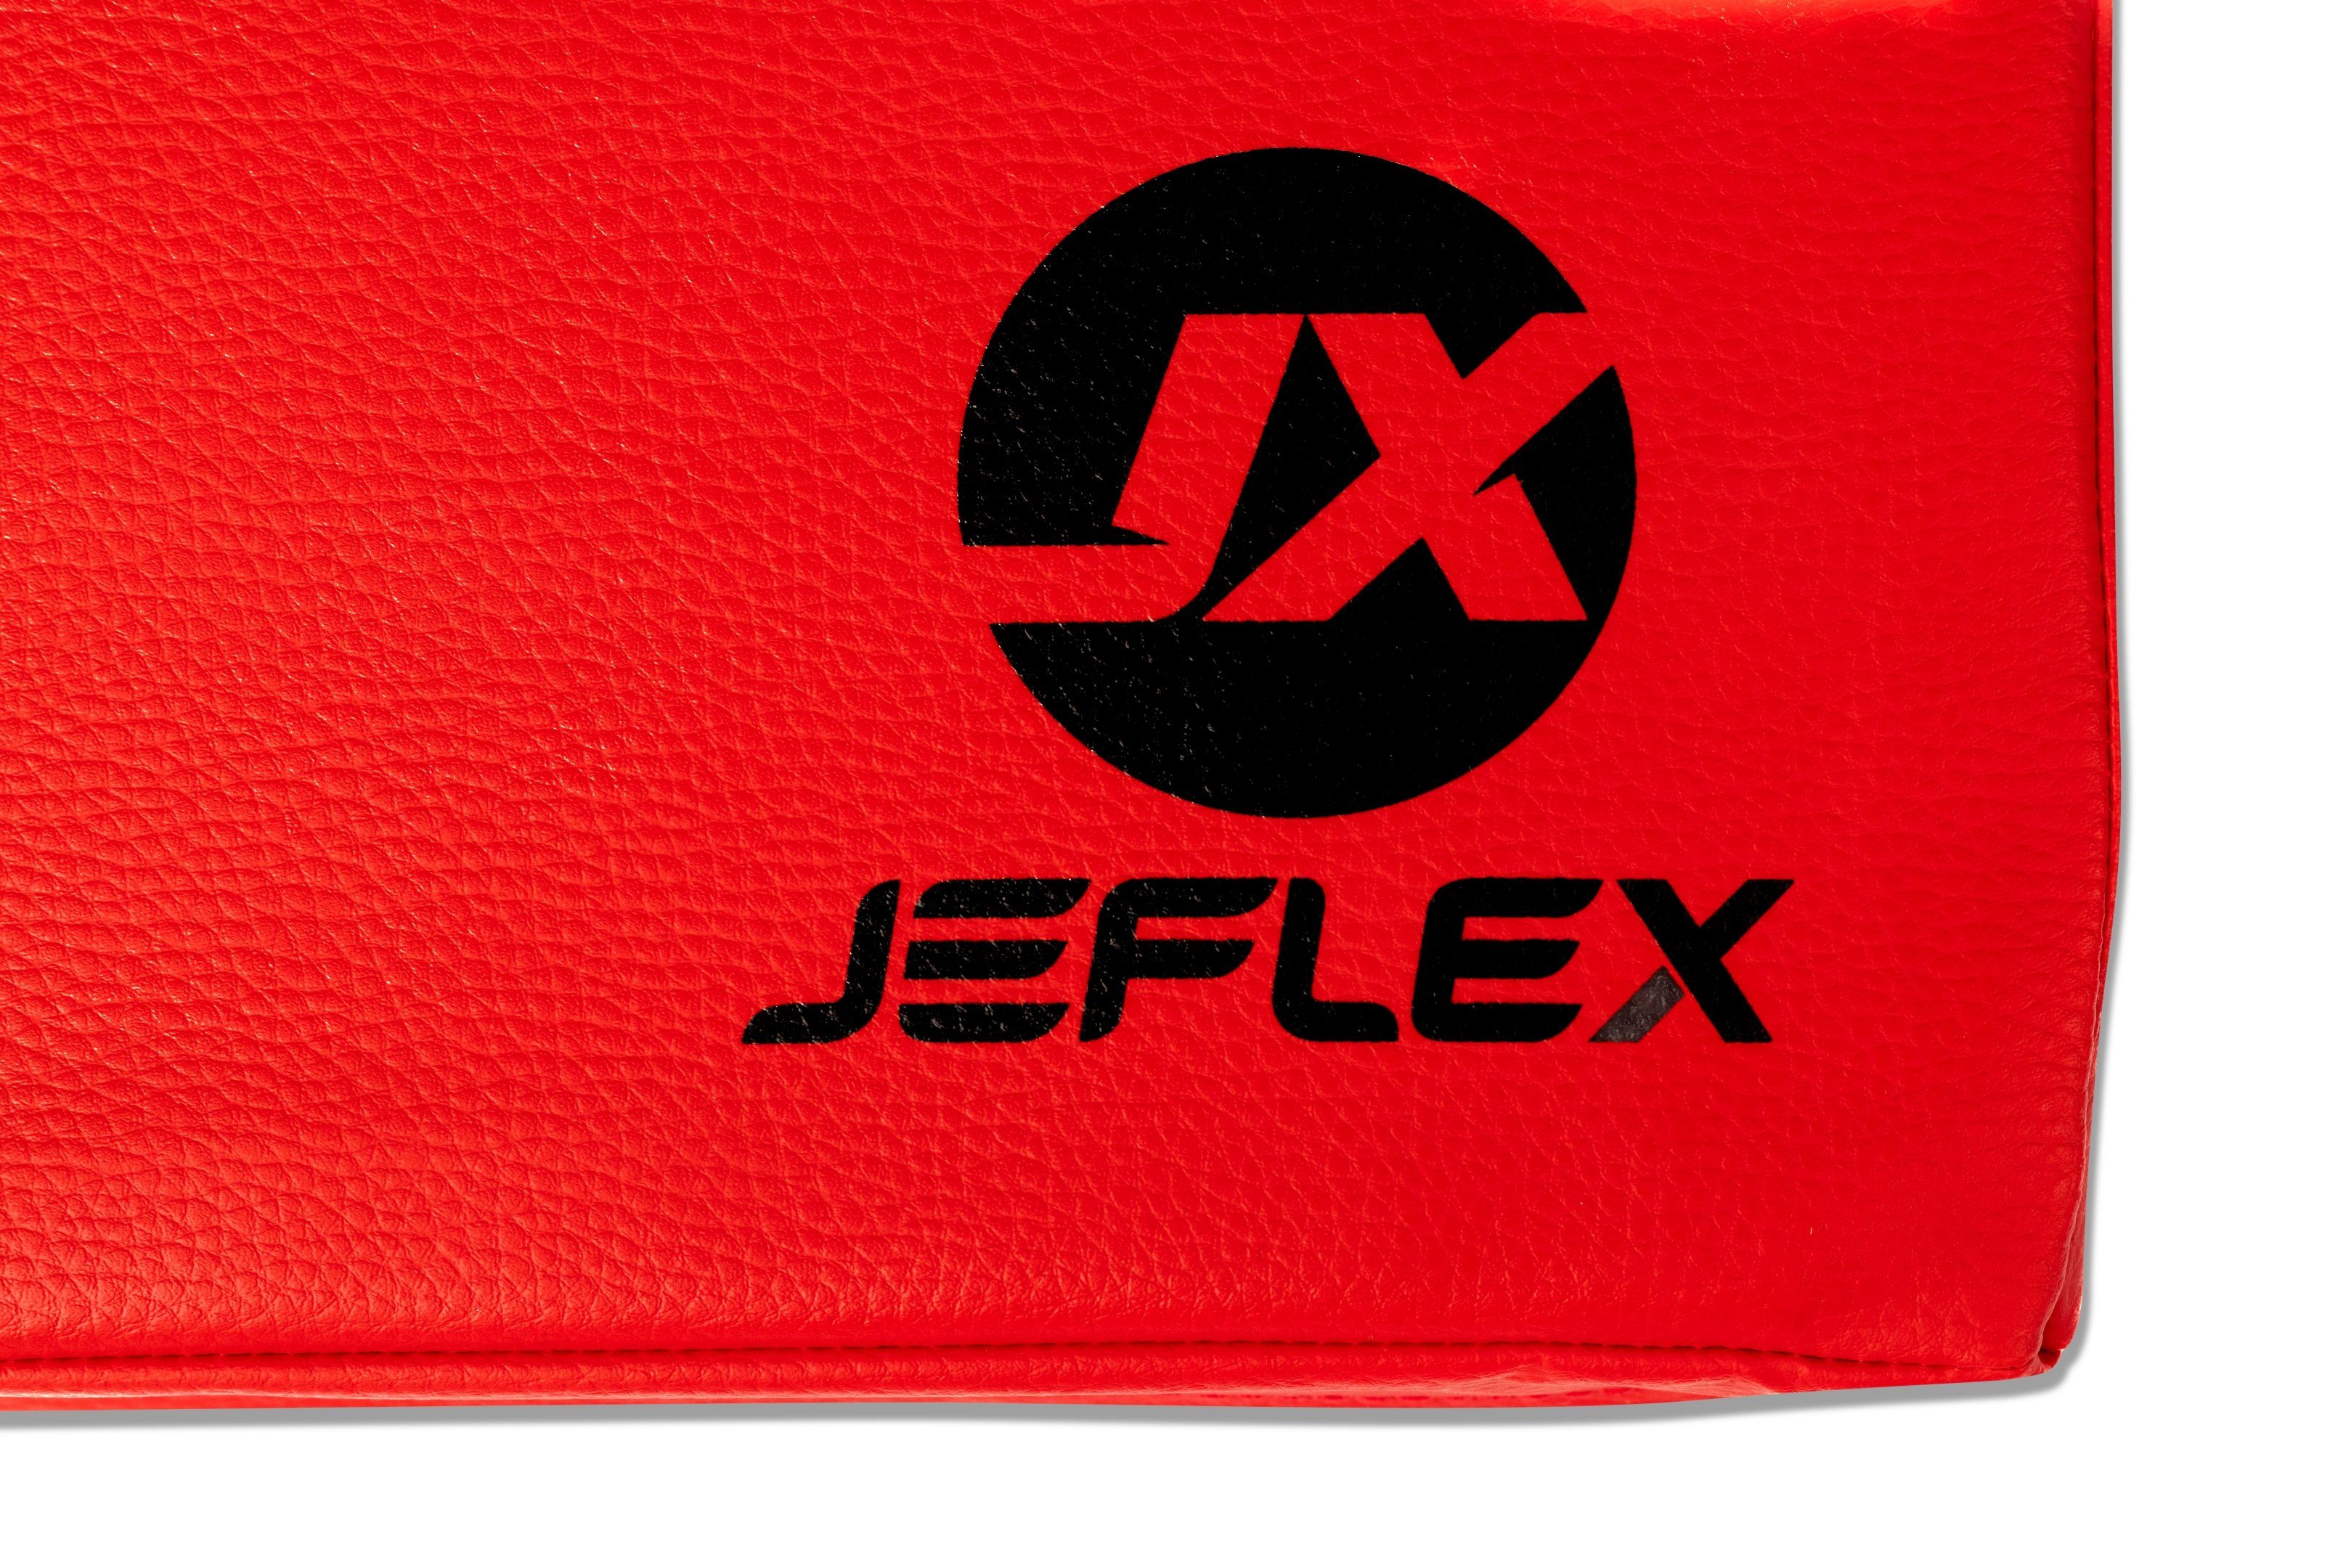 Jeflex Weichbodenmatte 150cm Jeflex Rot/Schwarz 100cm Germany x x x in 150cm Made 8cm, 100cm Turnmatte, Germany, x Weichbodenmatte 8cm, Made in